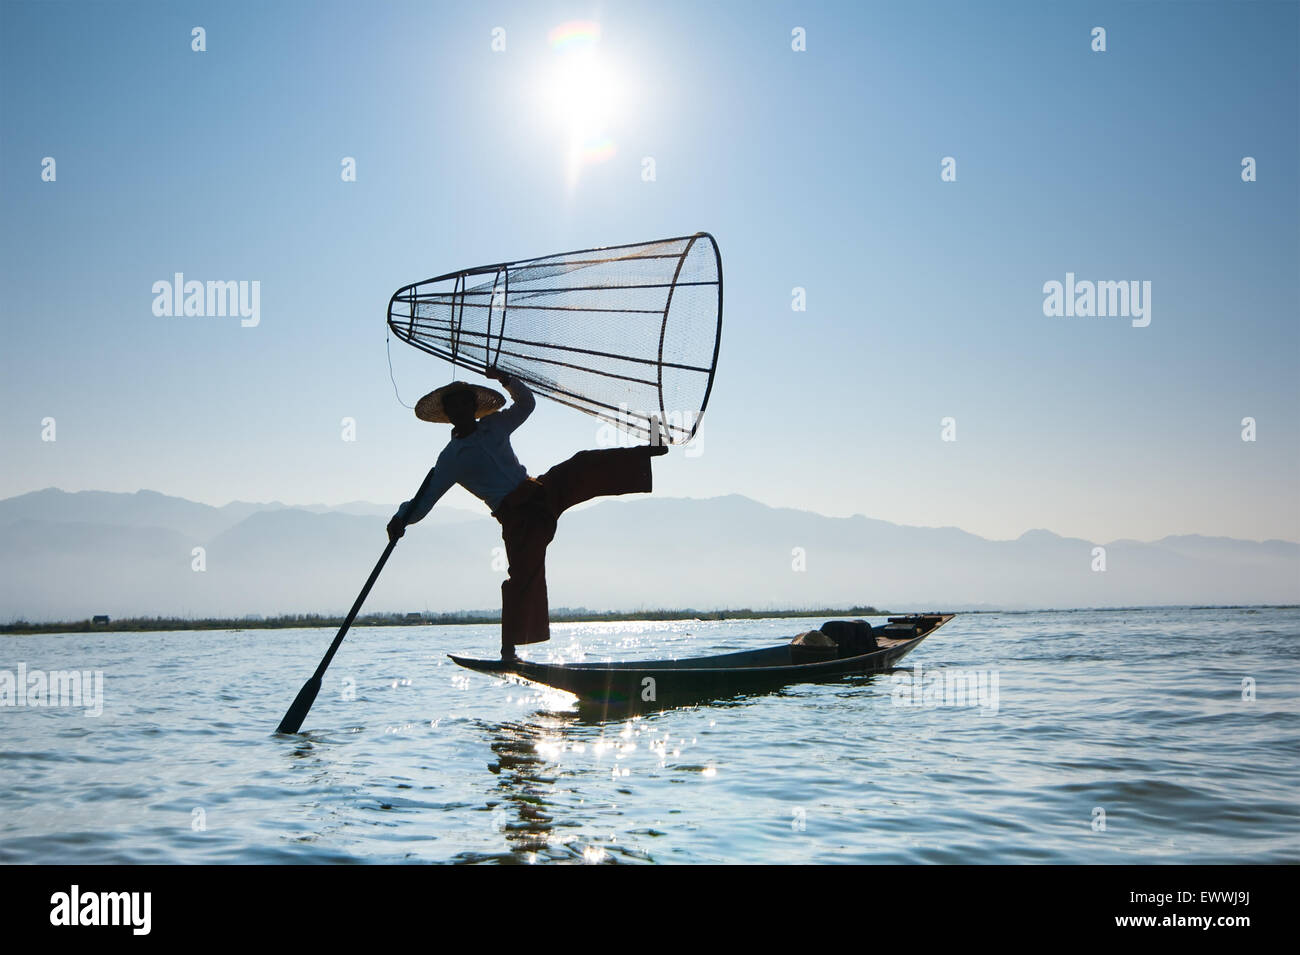 Pêcheur birman sur bambou voile prendre du poisson en mode traditionnel avec des net. Lac Inle, Myanmar (Birmanie) billet gam Banque D'Images